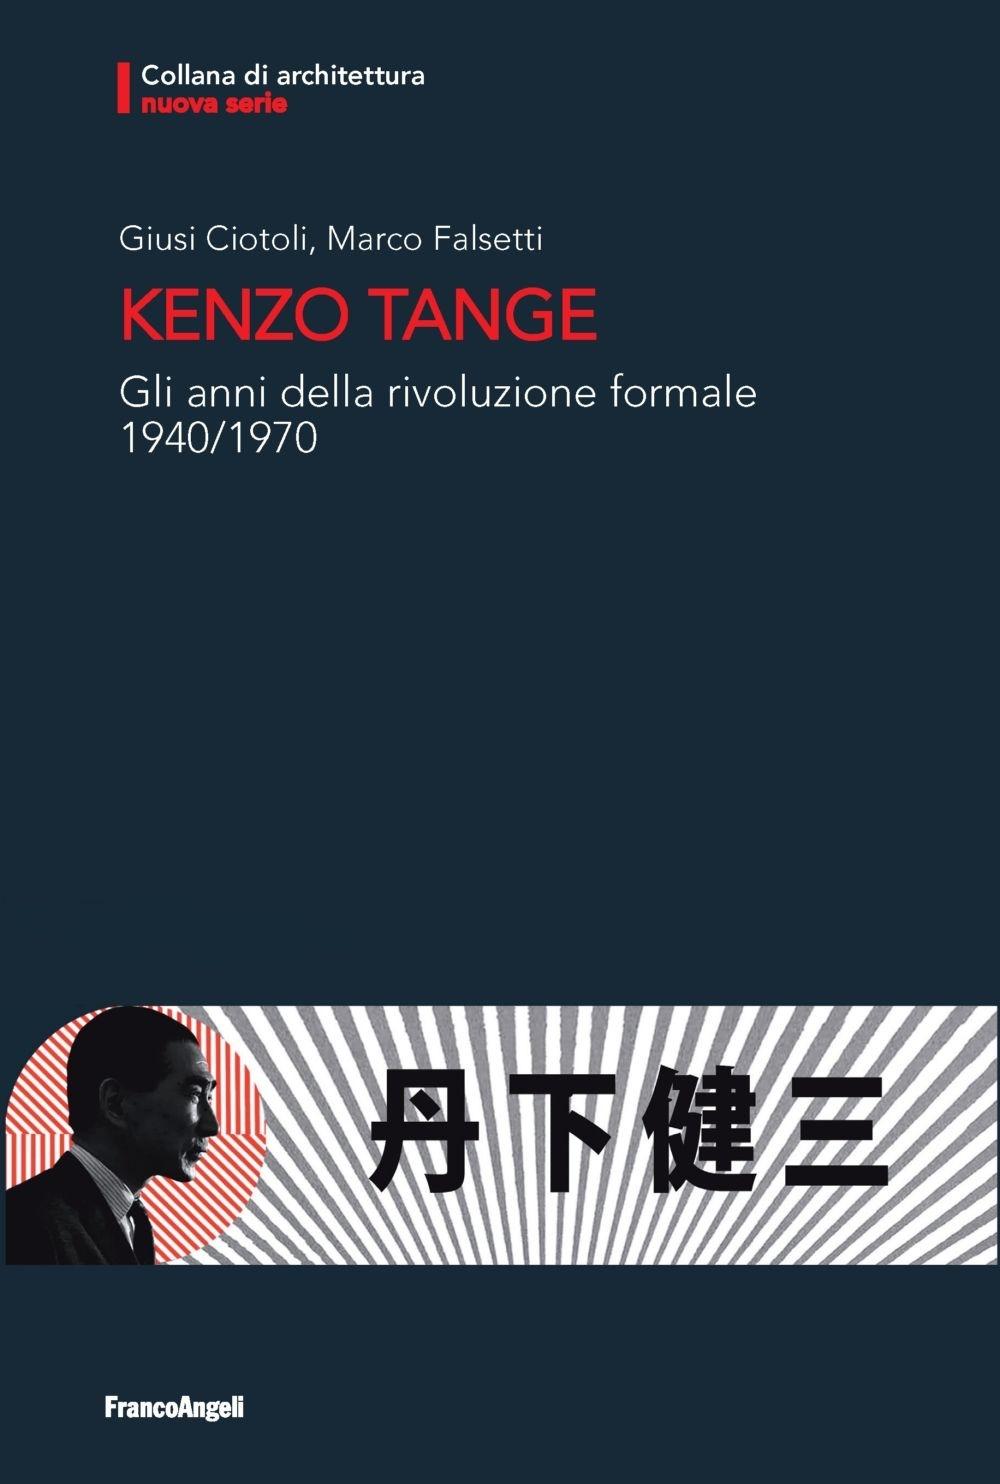 TANGE: KENZO TANGE. GLI ANNI DELLA RIVOLUZIONE FORMALE